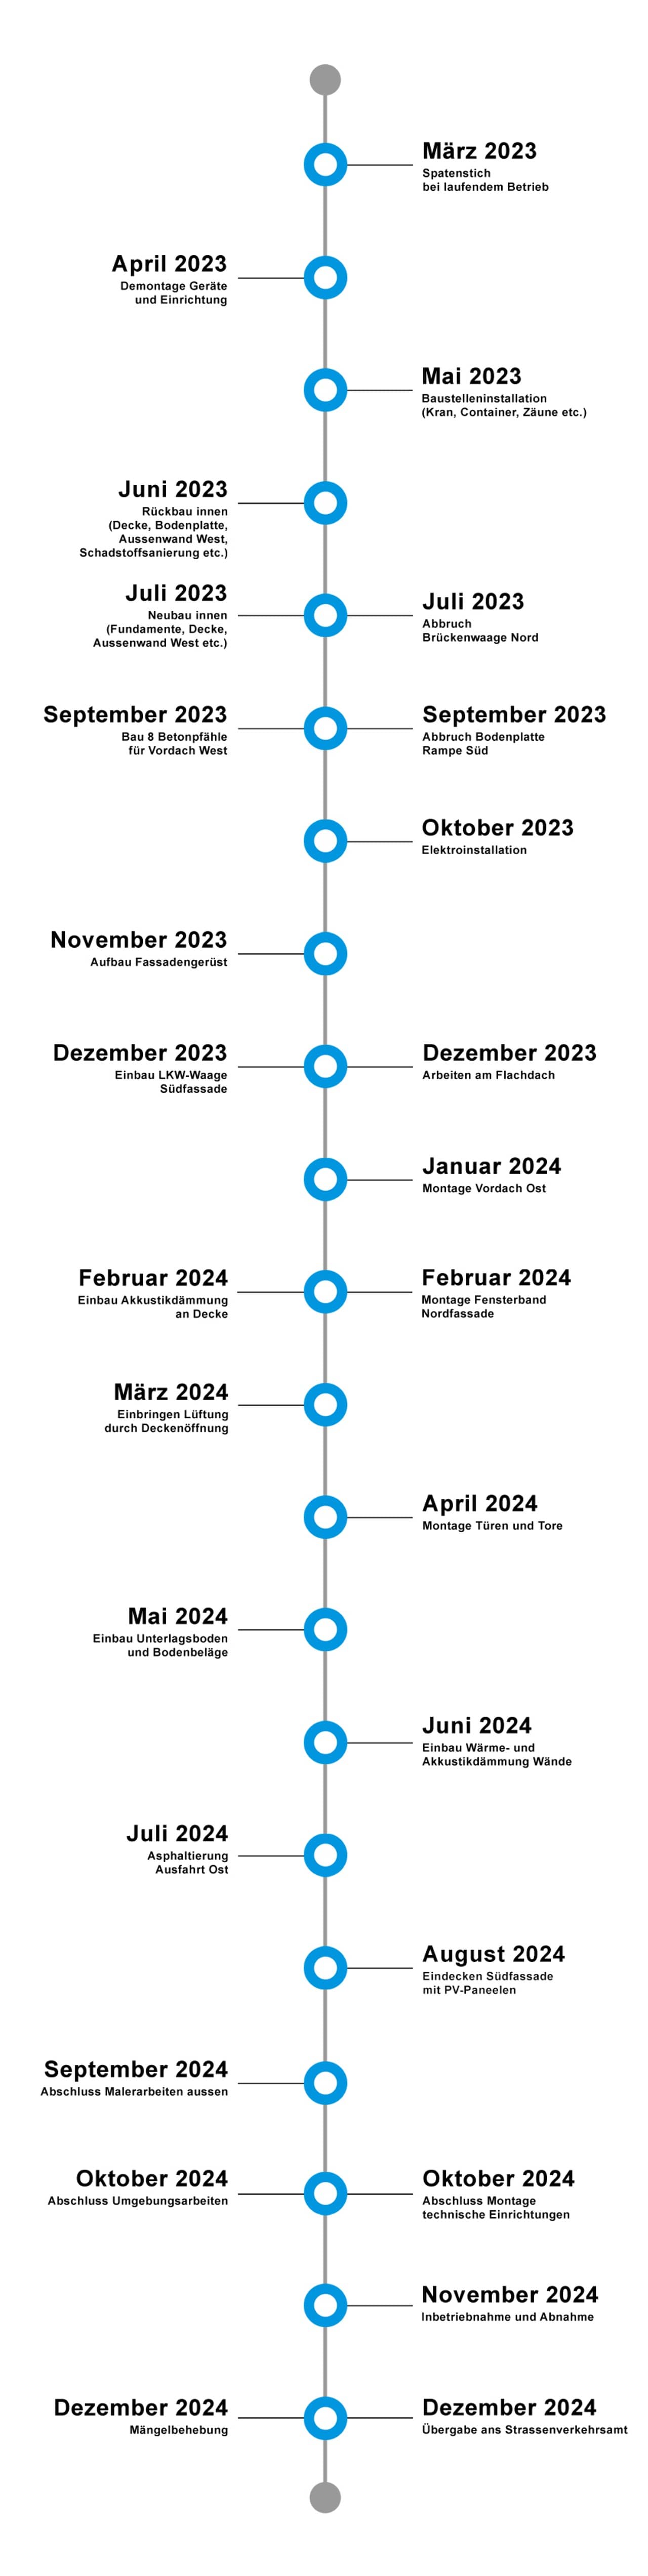 Zeitstrahl zur Sanierung der Fahrzeugprüfhalle von März 2023 bis und mit Dezember 2024